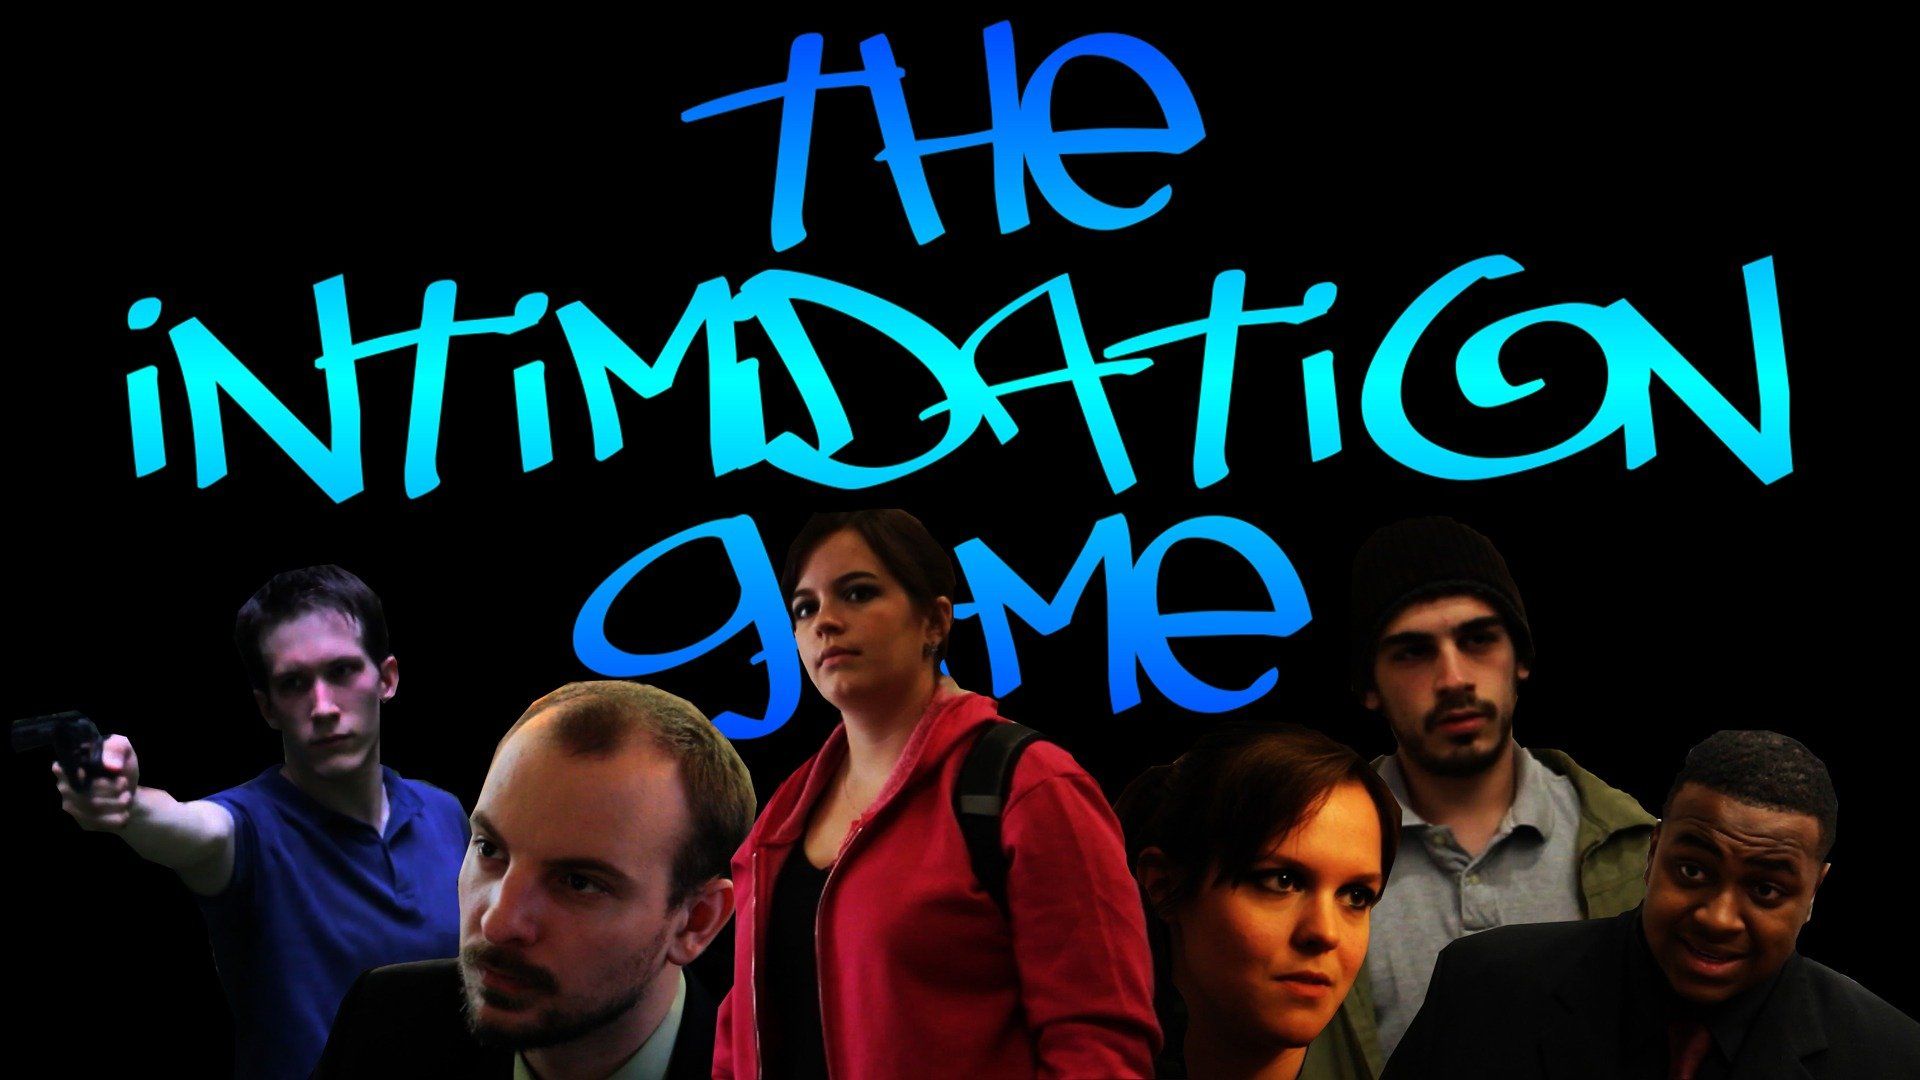 Watch The Intimidation Game (2012) Full Movie Online - Plex